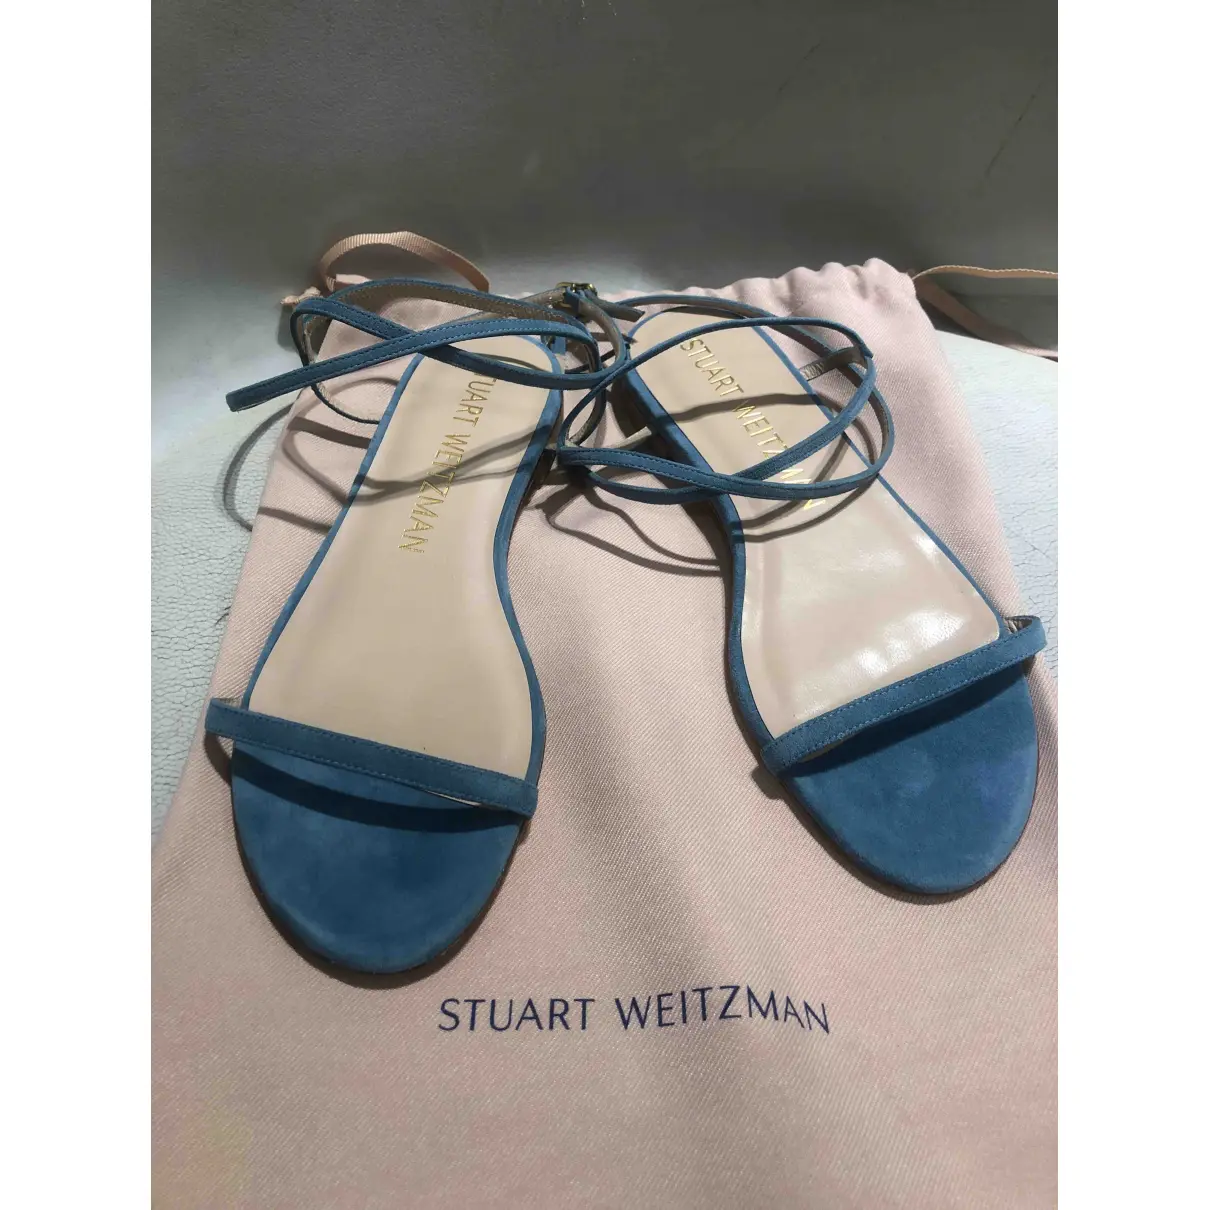 Buy Stuart Weitzman Sandals online